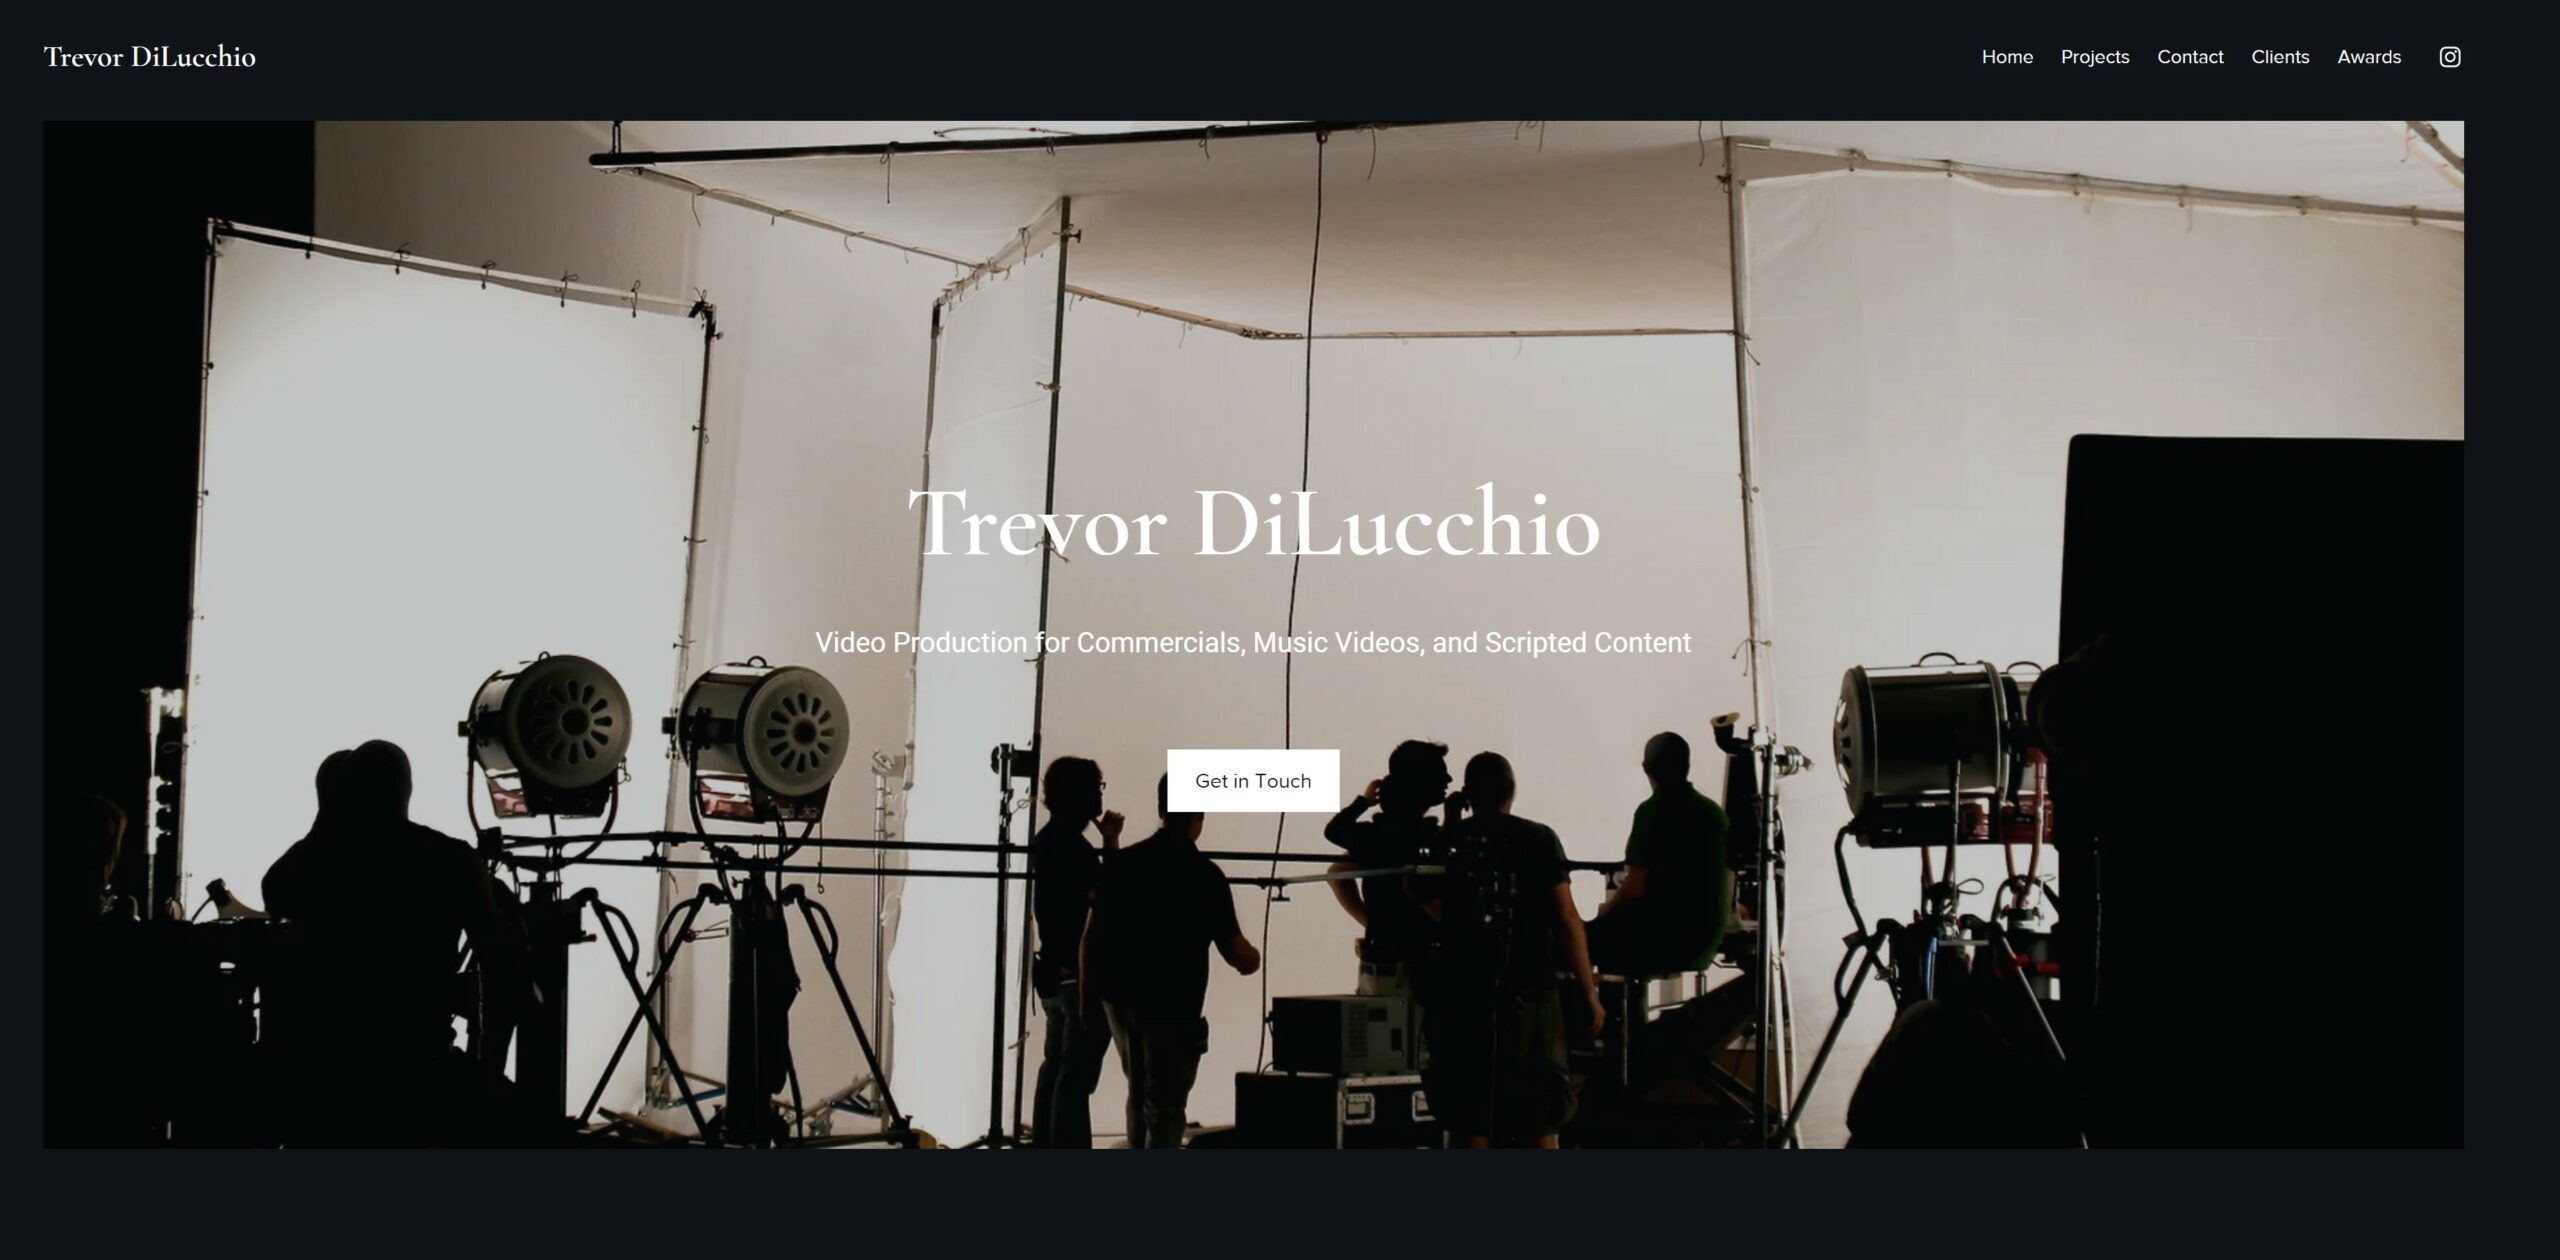 www.trevordilucchio.com